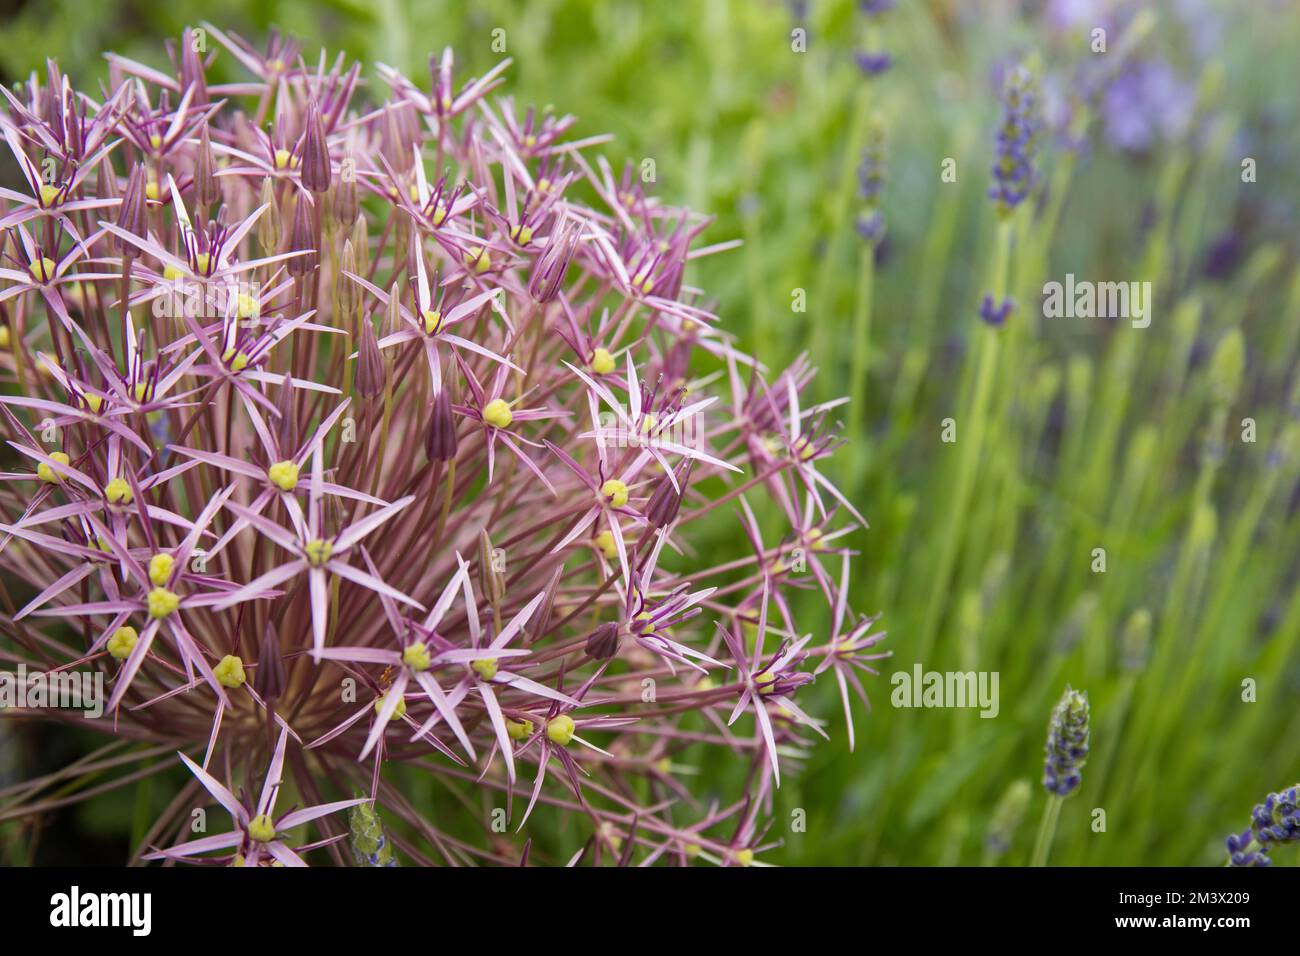 Allium christphii fleurit entre Lavender et Campanula dans un lit 'méditerranéen' surélevé dans un jardin. Powys, pays de Galles. Juin. Banque D'Images